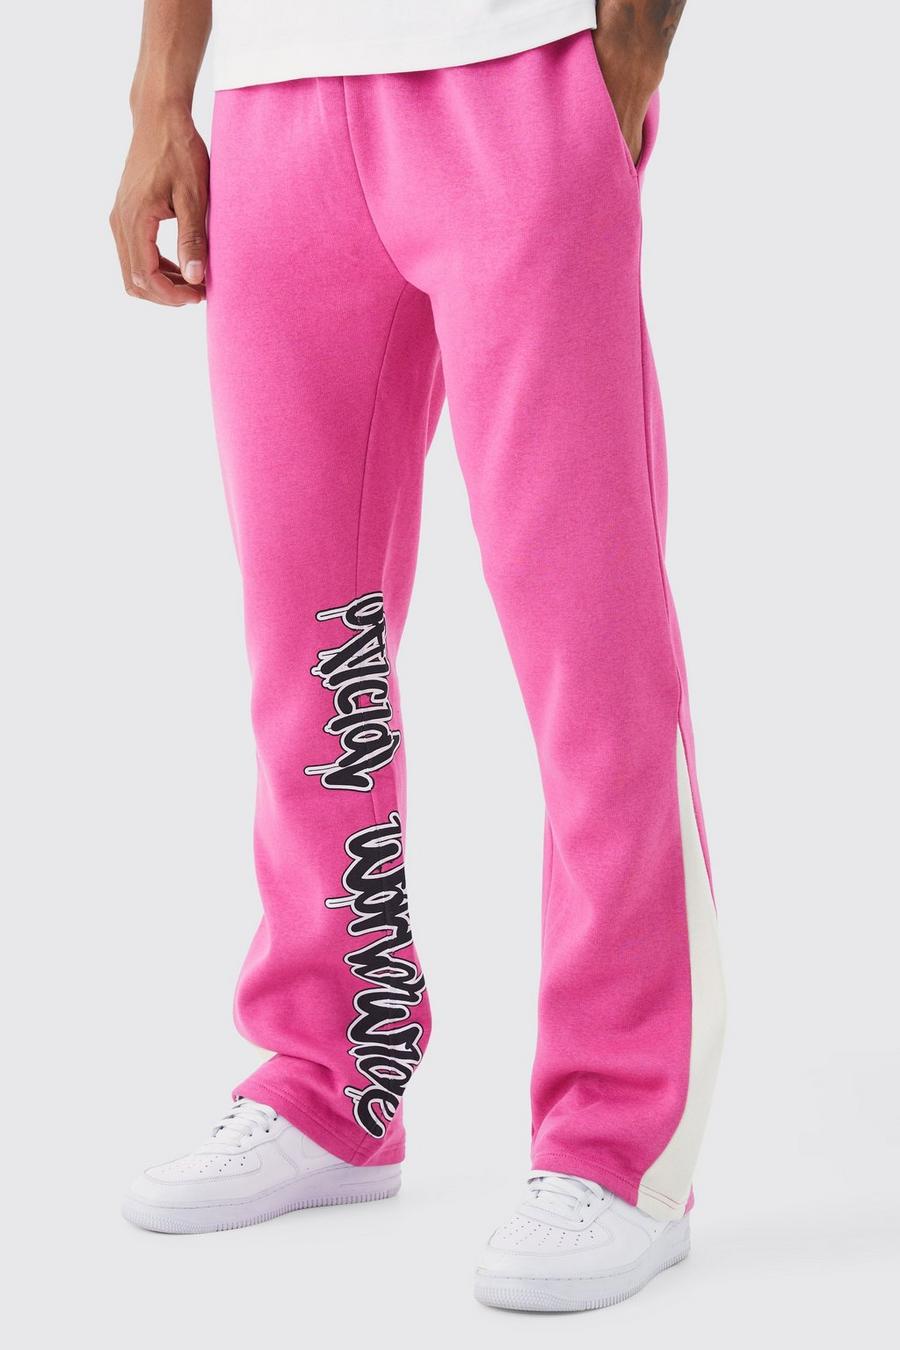 Pantaloni tuta Tall con stampa stile Graffiti, inserti e pannelli, Pink image number 1